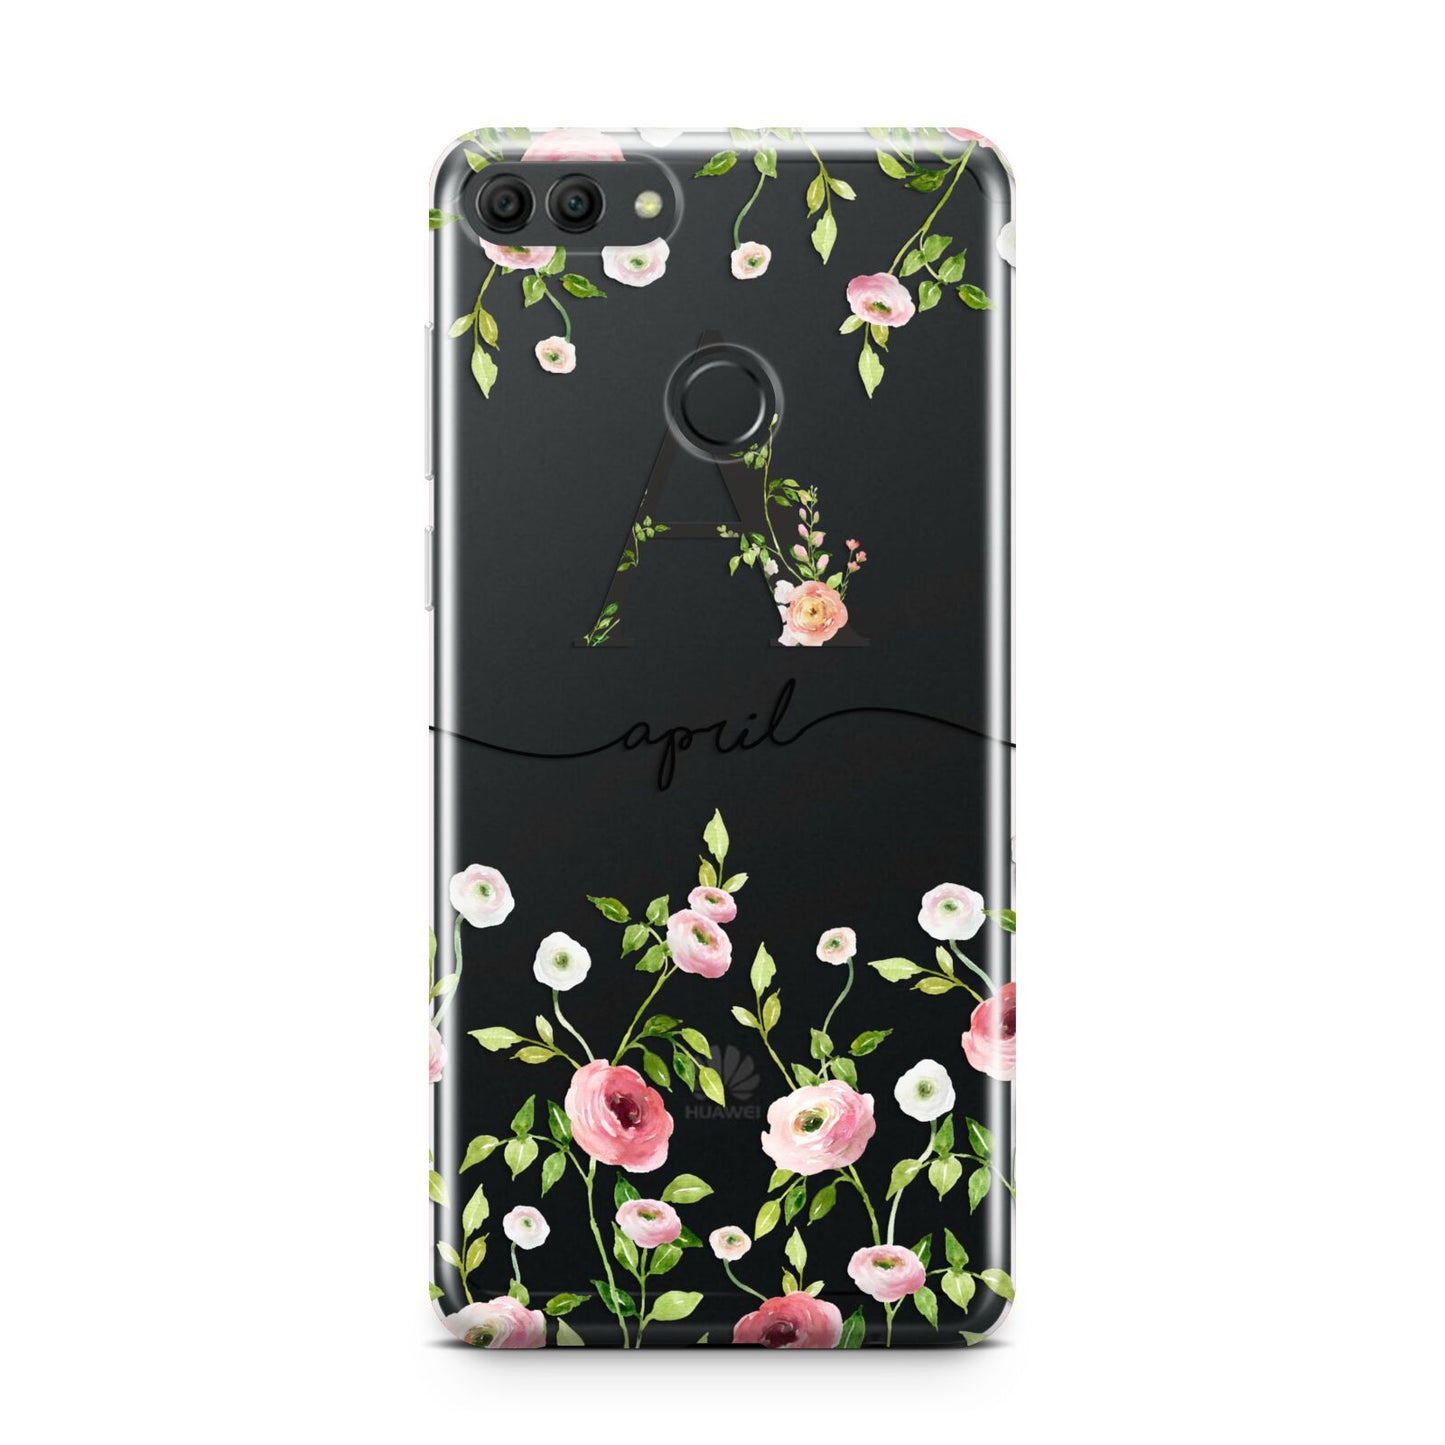 Personalised Floral Initial Huawei Y9 2018